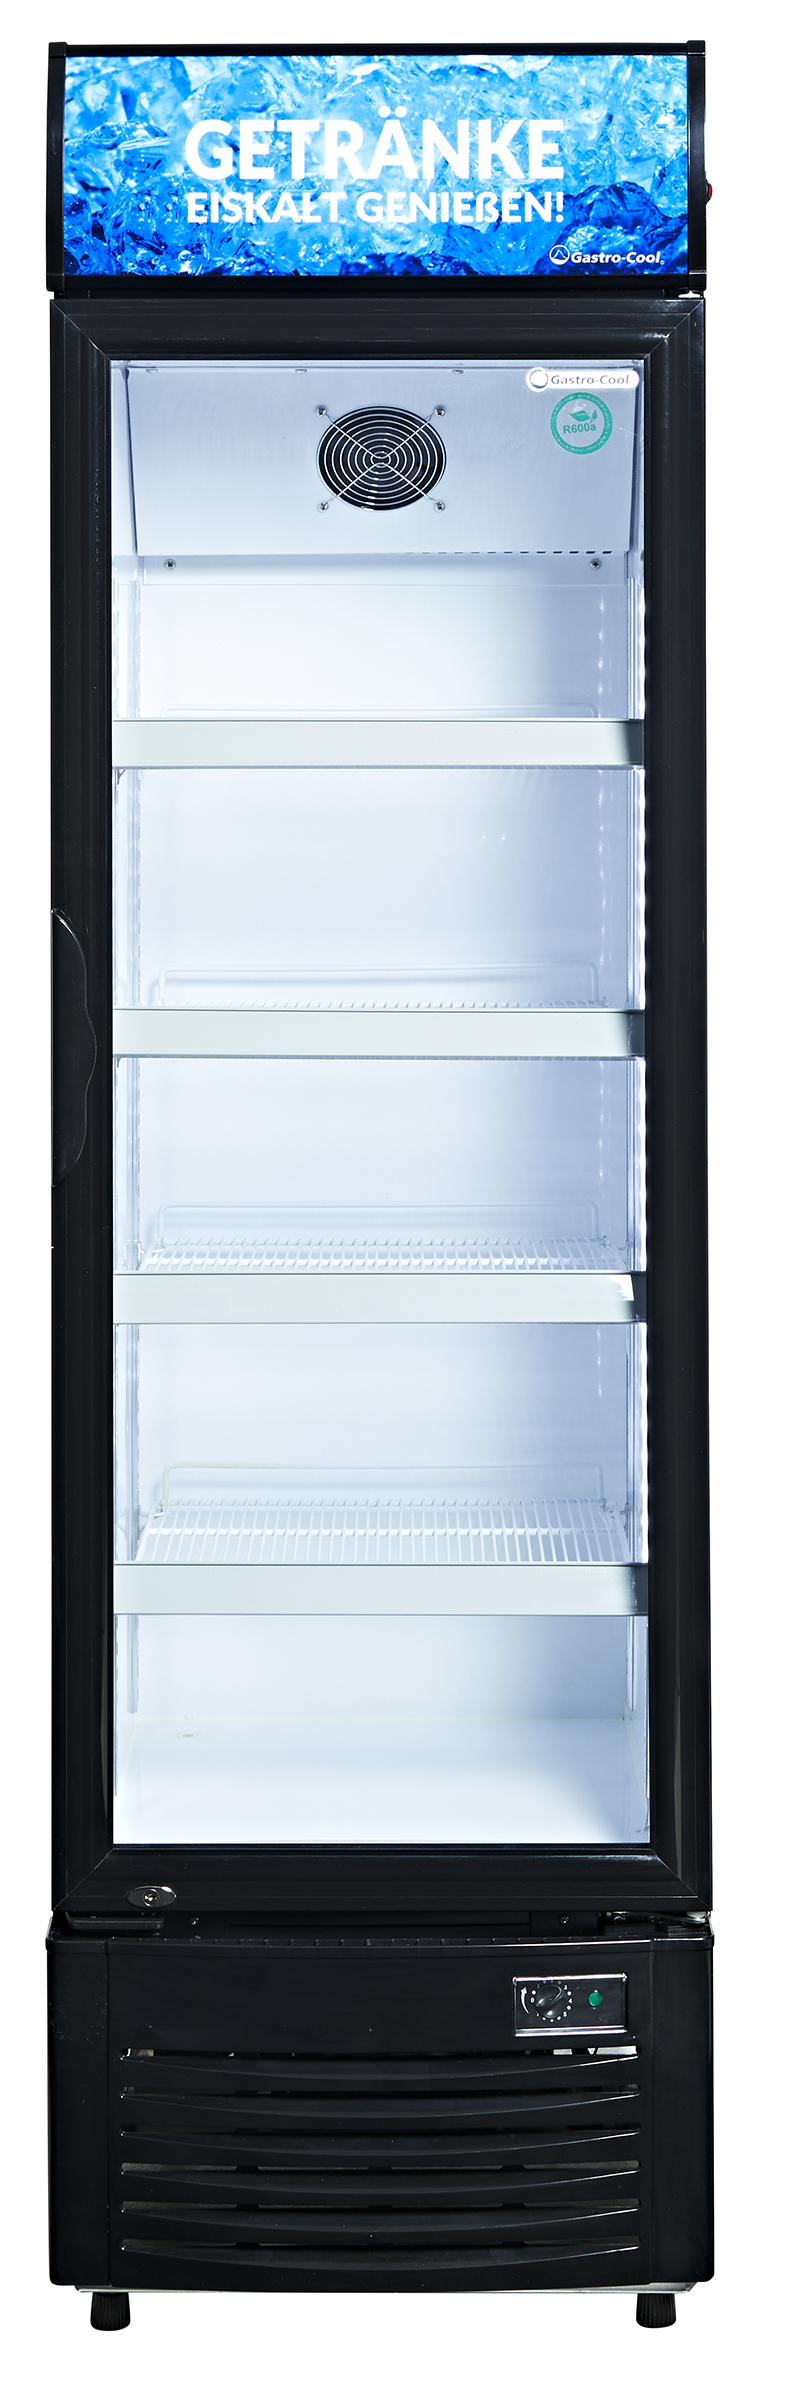 Gastro-Cool - Getränkekühlschrank mit Werbedisplay - DC280 - frontal leer